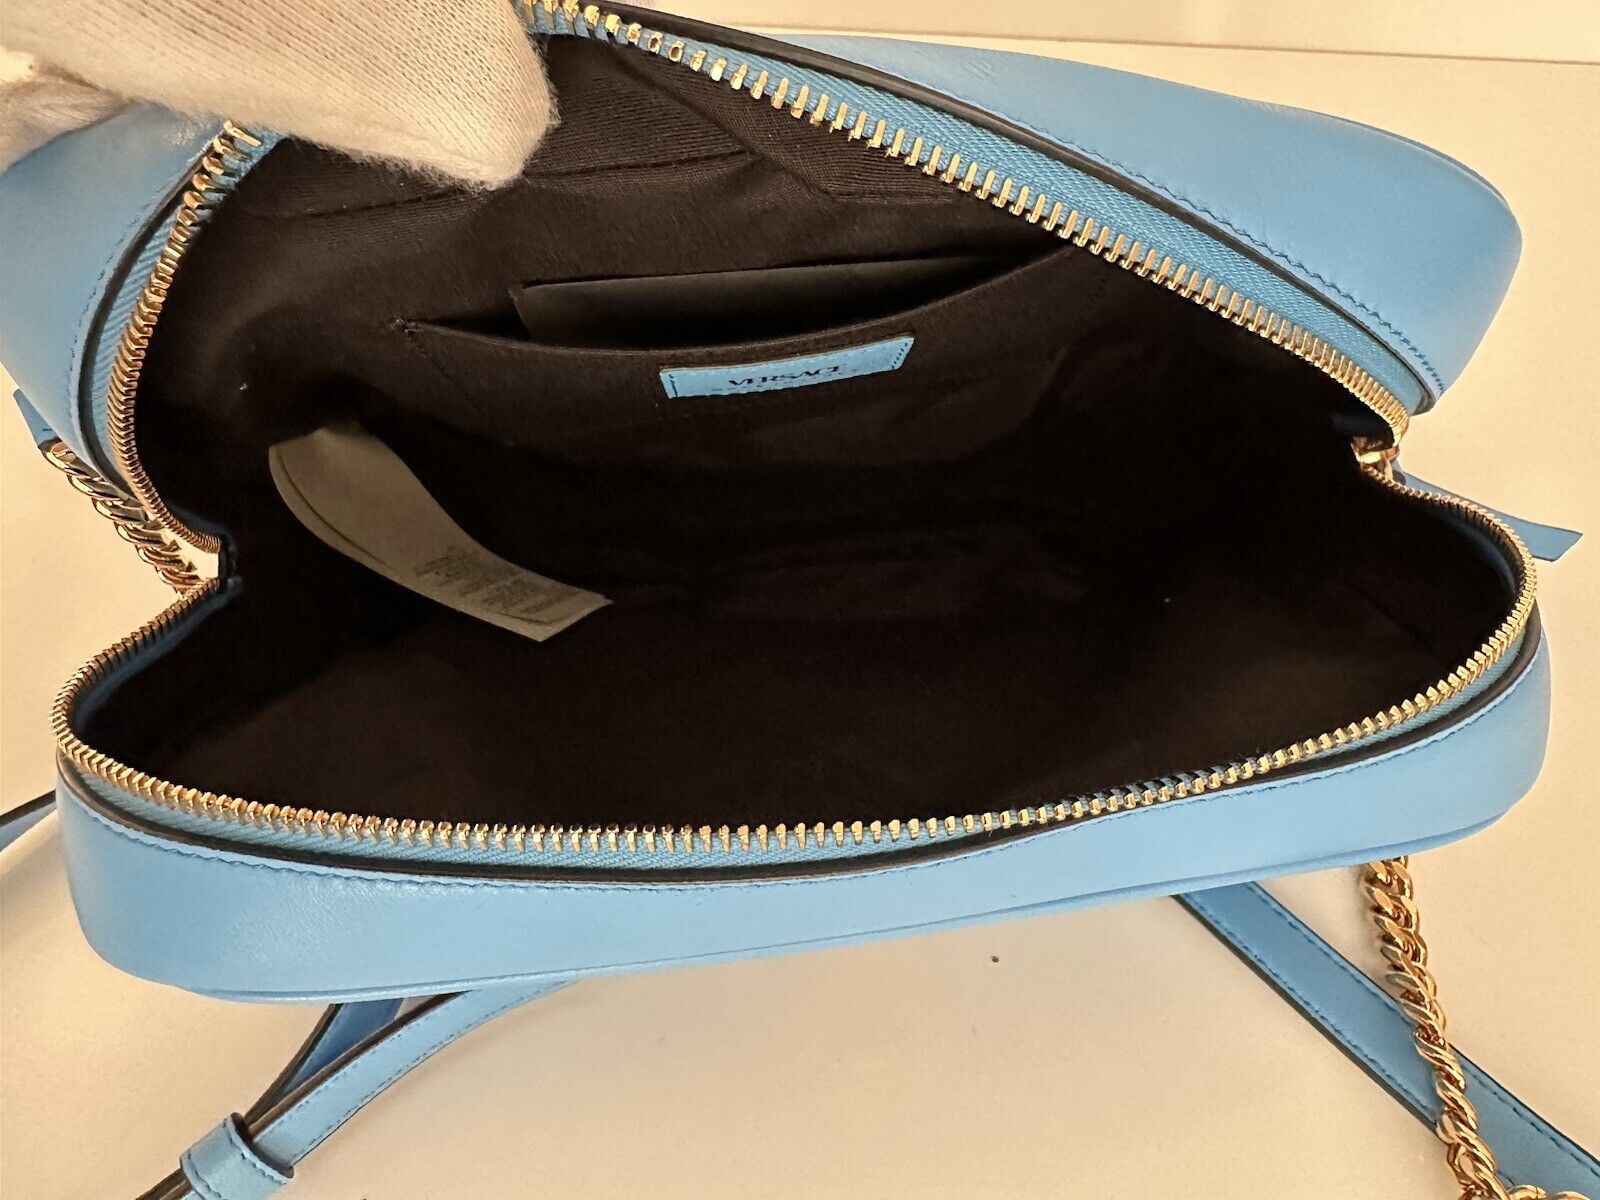 Neu mit Etikett: 1275 $ Versace Mittelgroße Umhängetasche aus gestepptem Lammleder in Blau 1008828 Italien 